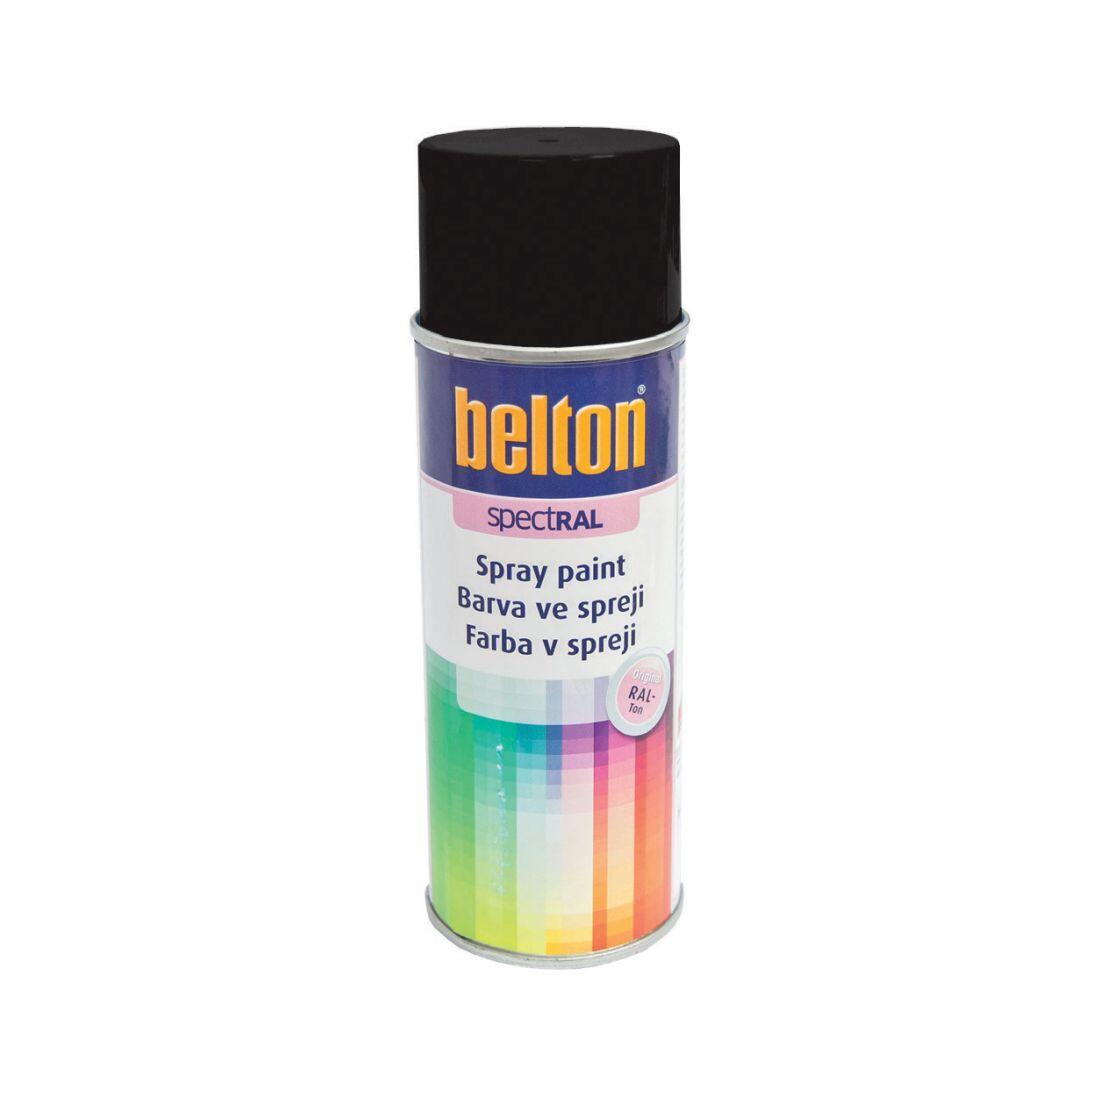 barva ve spreji BELTON RAL 9005, 400ml ČER 0.31 Kg MAXMIX Sklad14 825120 25